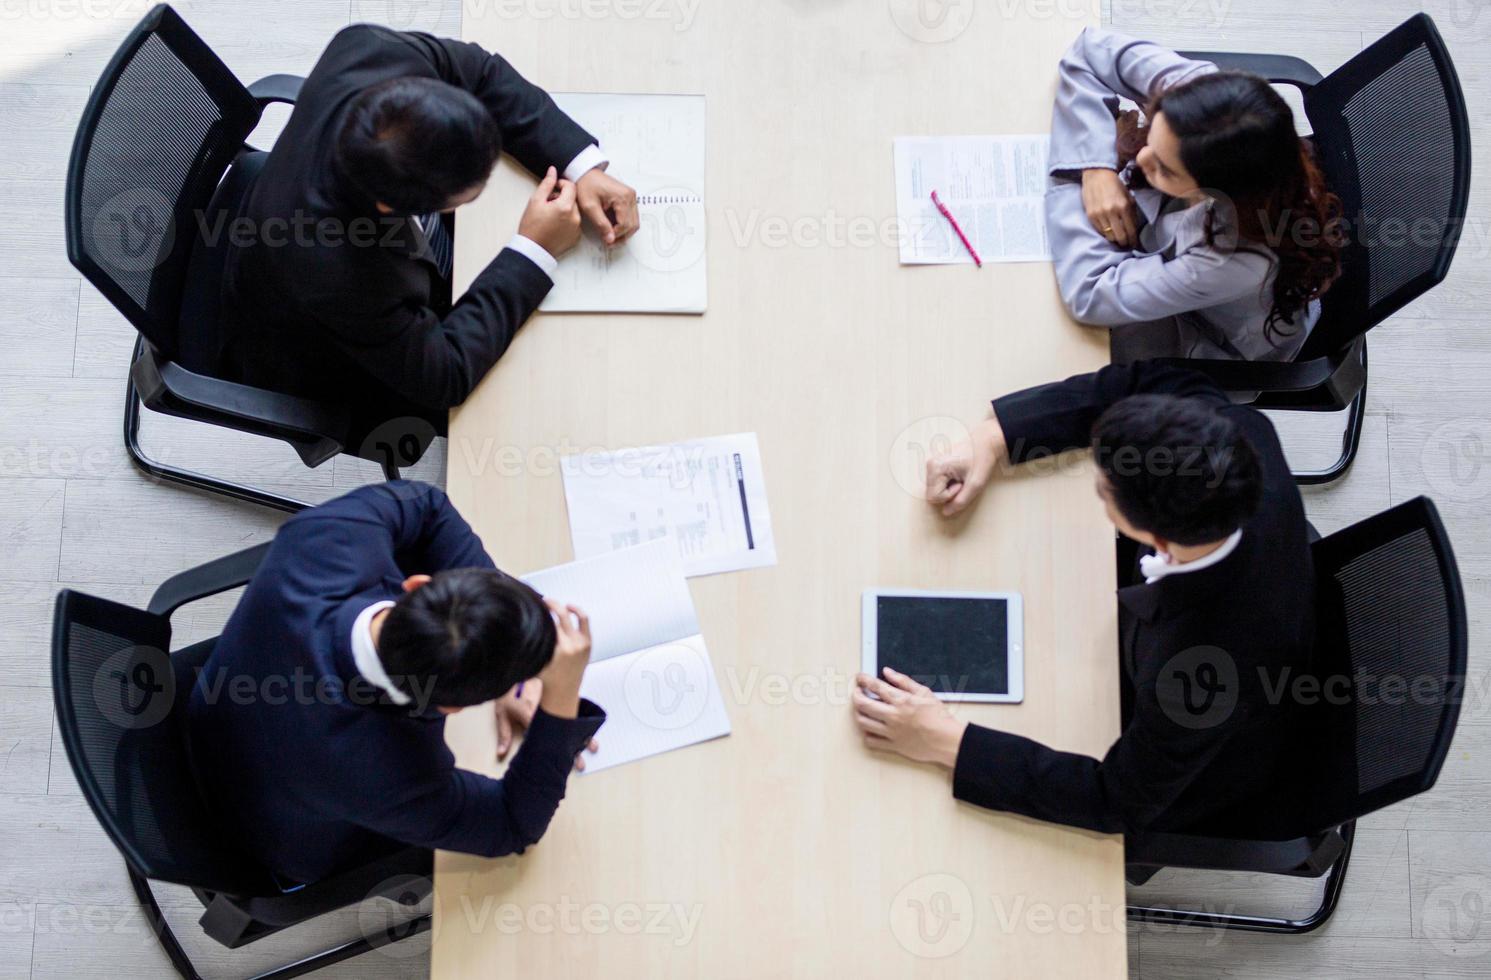 vista superior de un grupo de hombres de negocios y mujeres de negocios que tienen una reunión y hacen un compromiso comercial. foto